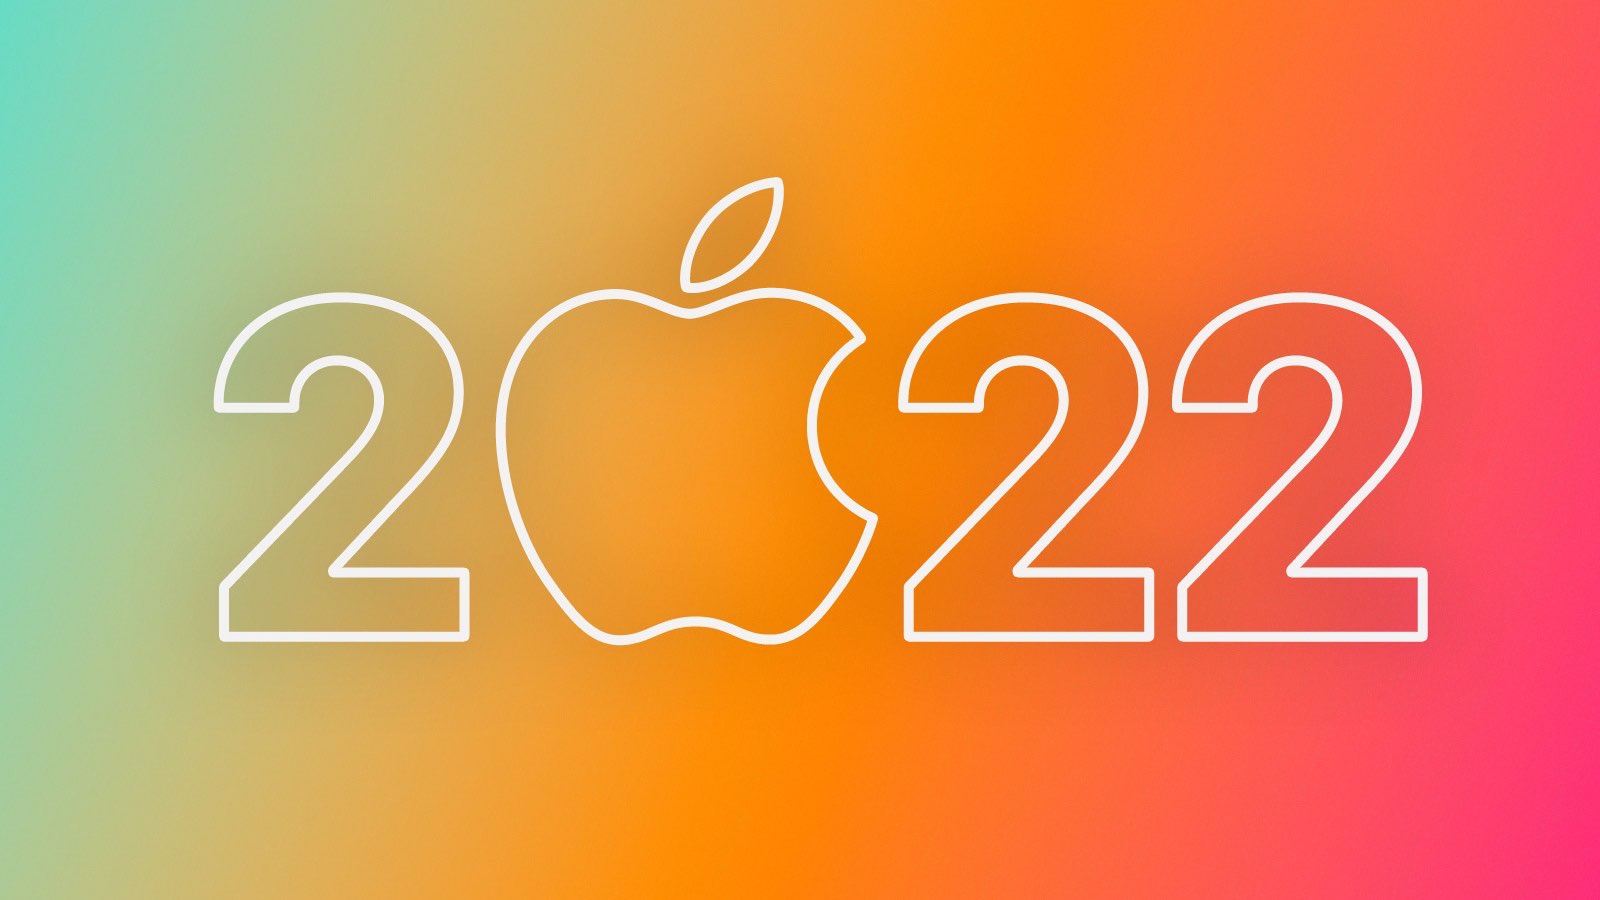 Toto jsou novinky, které představí Apple v roce 2022